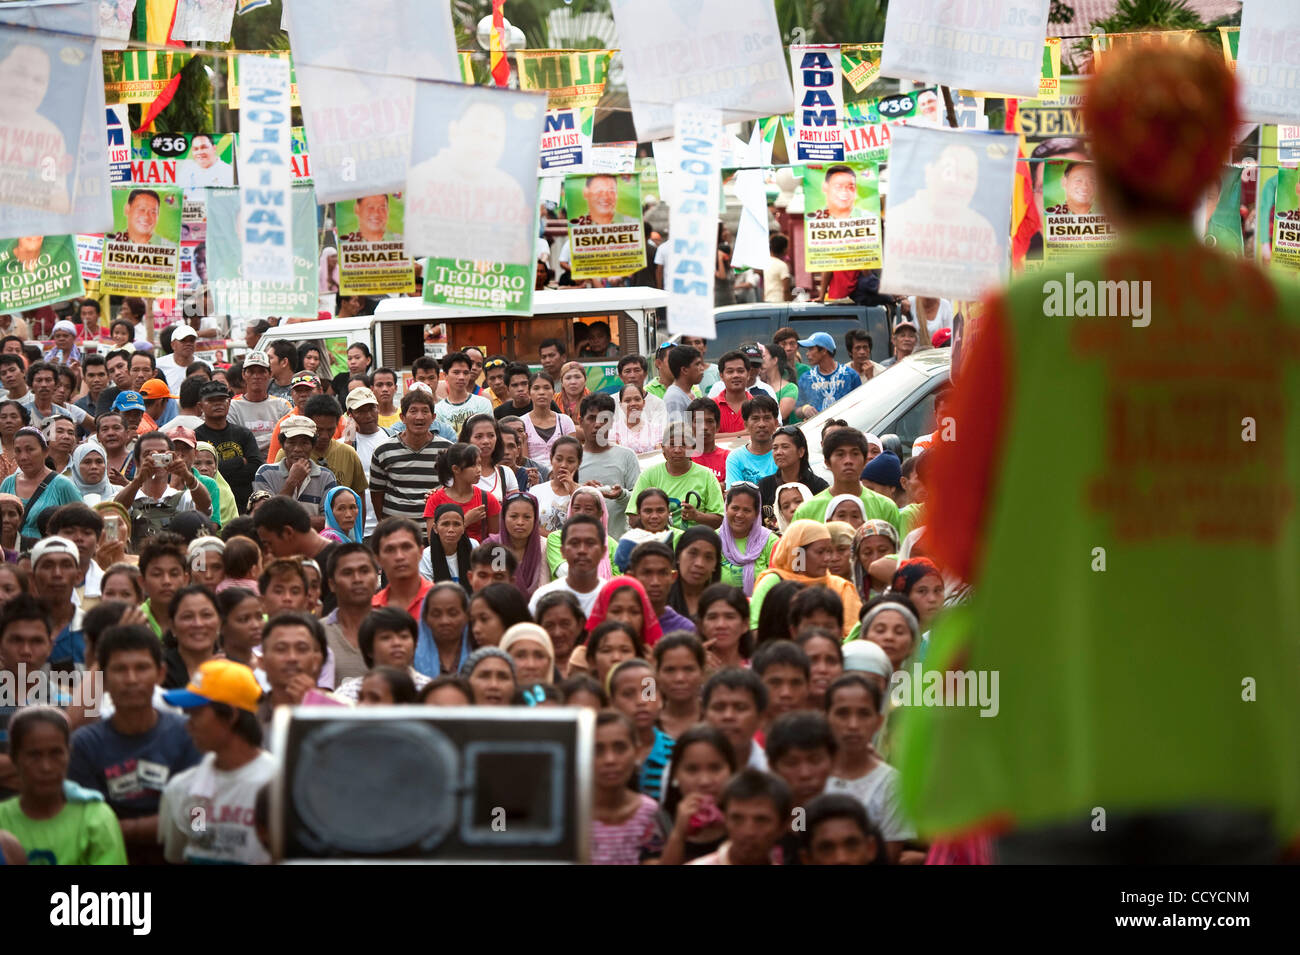 03 mai 2010 - La ville de Cotabato, Mindanao, Philippines - partisan de la ''Coalition pour le changement'' Campagne électorale tenue le 03 mai 2010 à Cotabato City, Philippines Mindanao..les Forces armées des Philippines (AFP) sont en alerte rouge comme les élections aux Philippines sont accompagnés d'une montée de la violence Banque D'Images